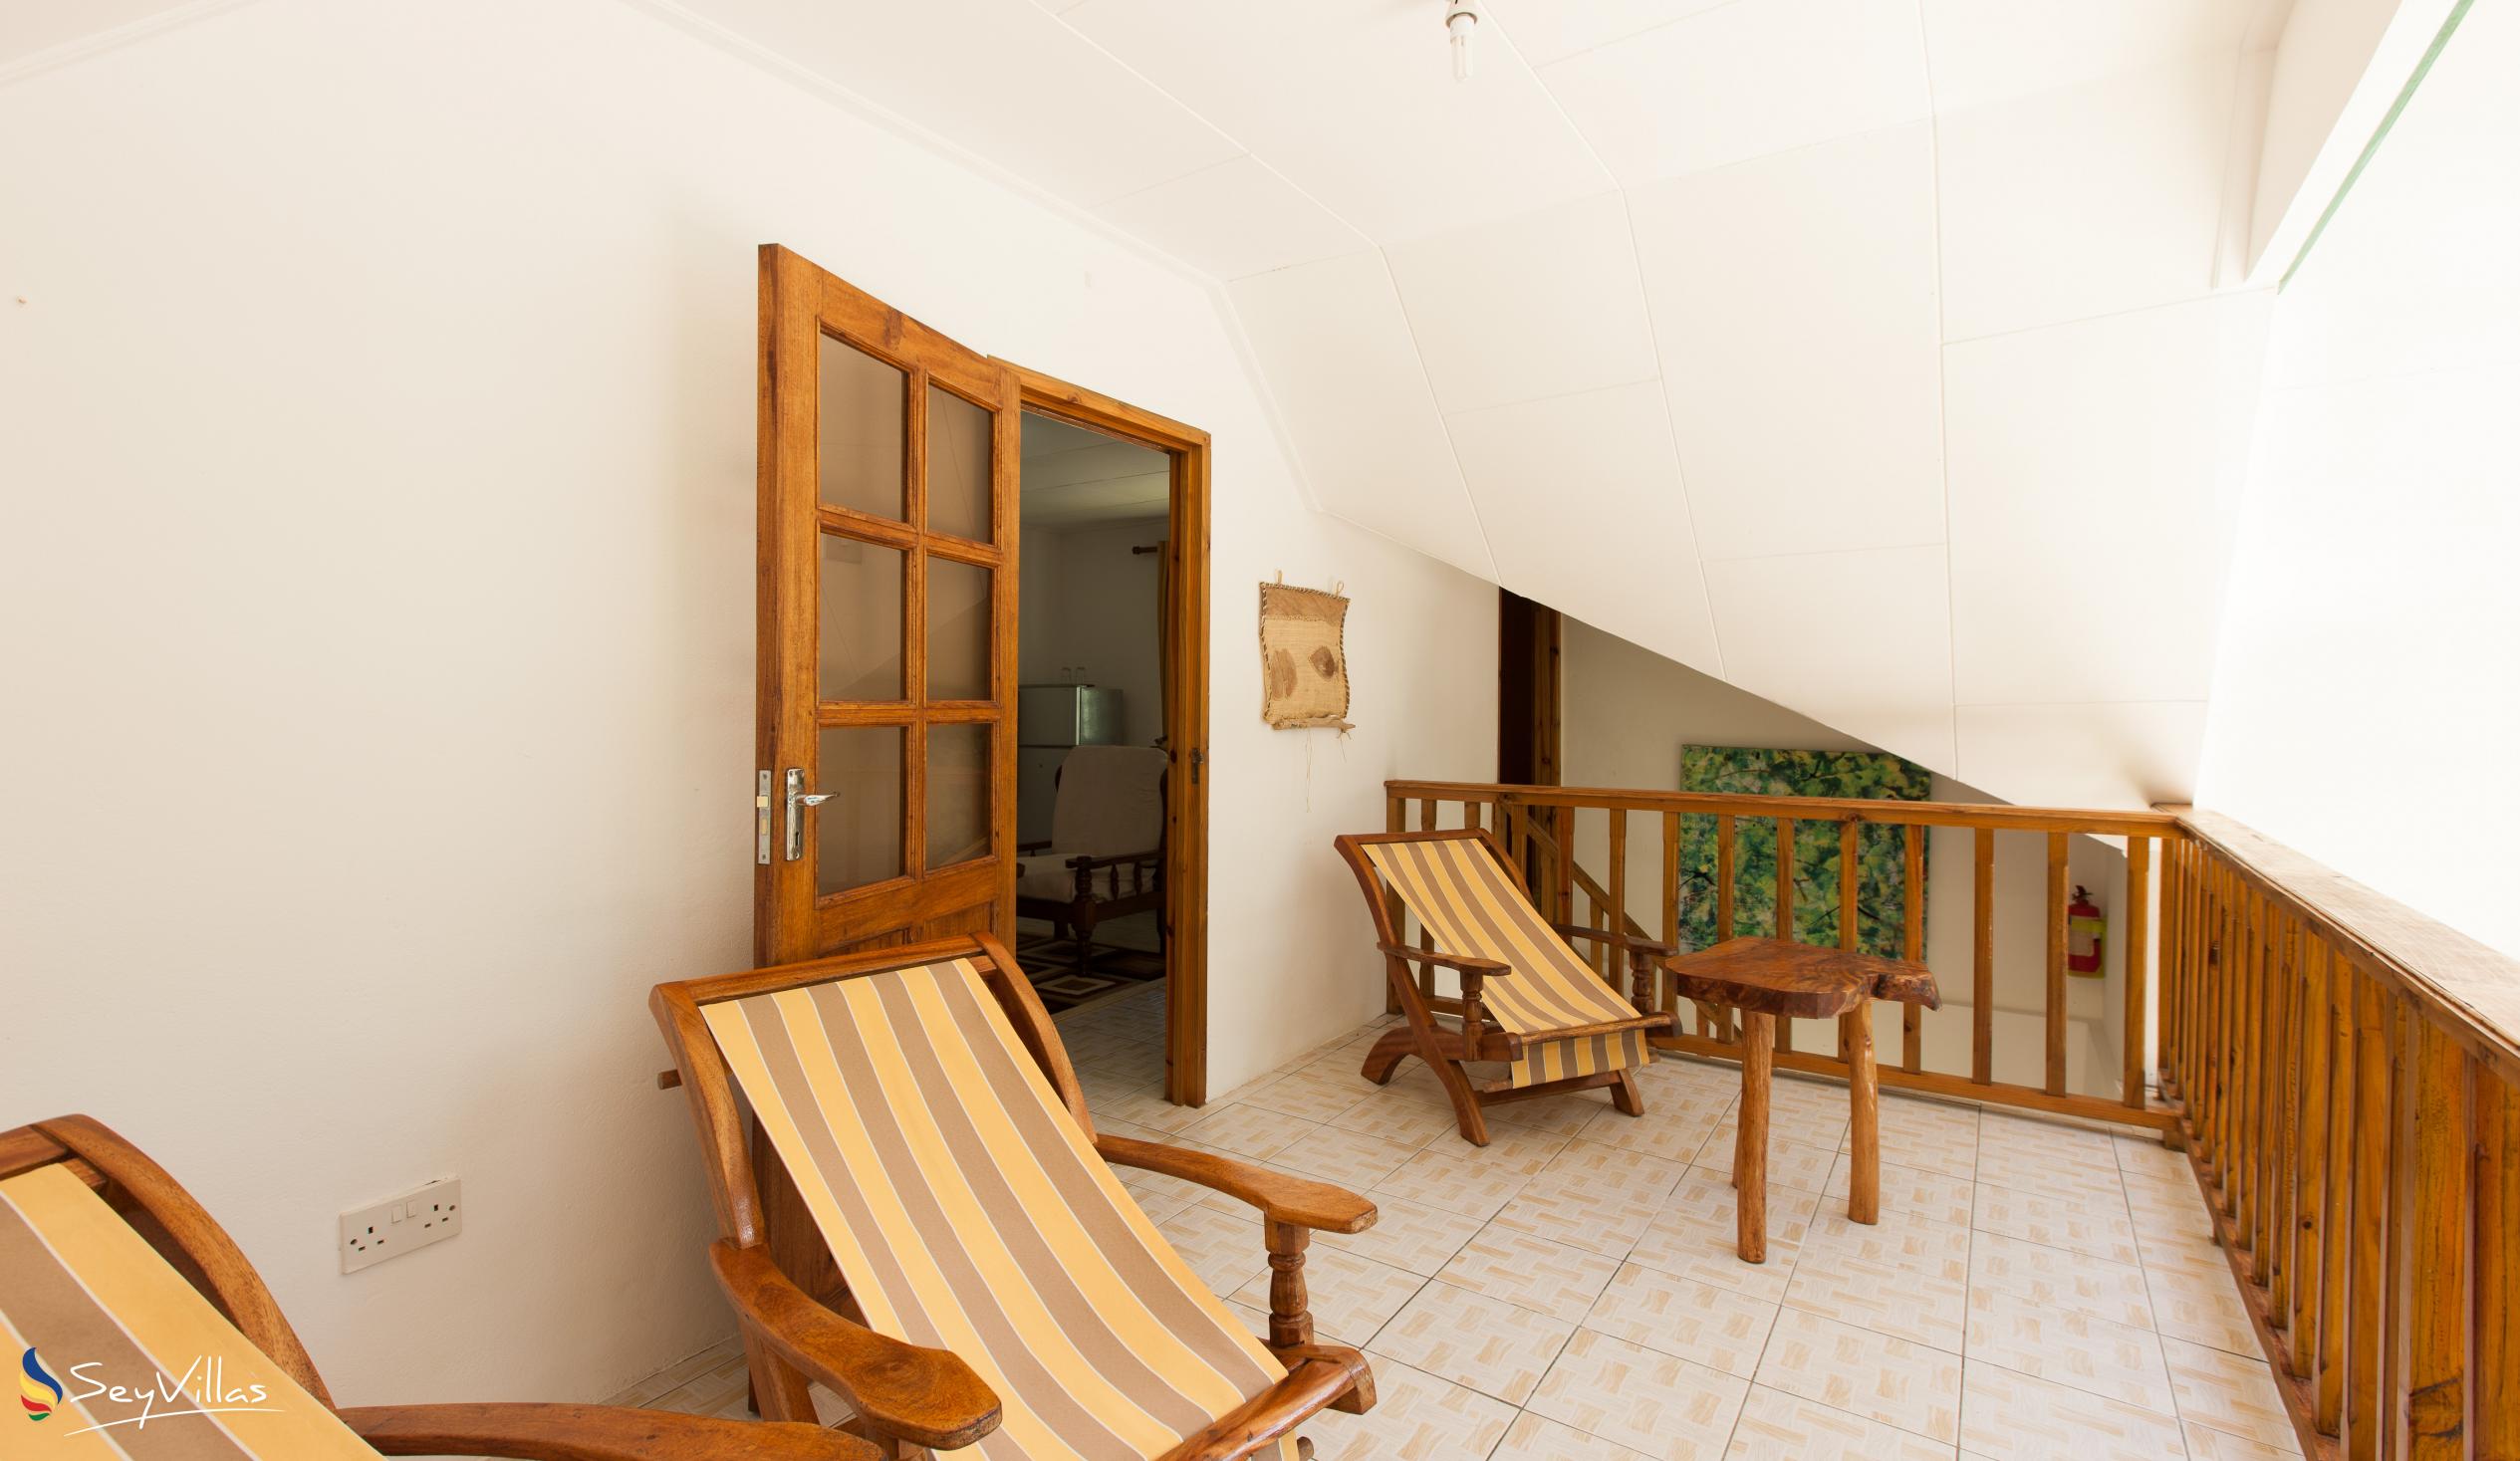 Foto 47: Tannette's Villa - Intérieur - La Digue (Seychelles)